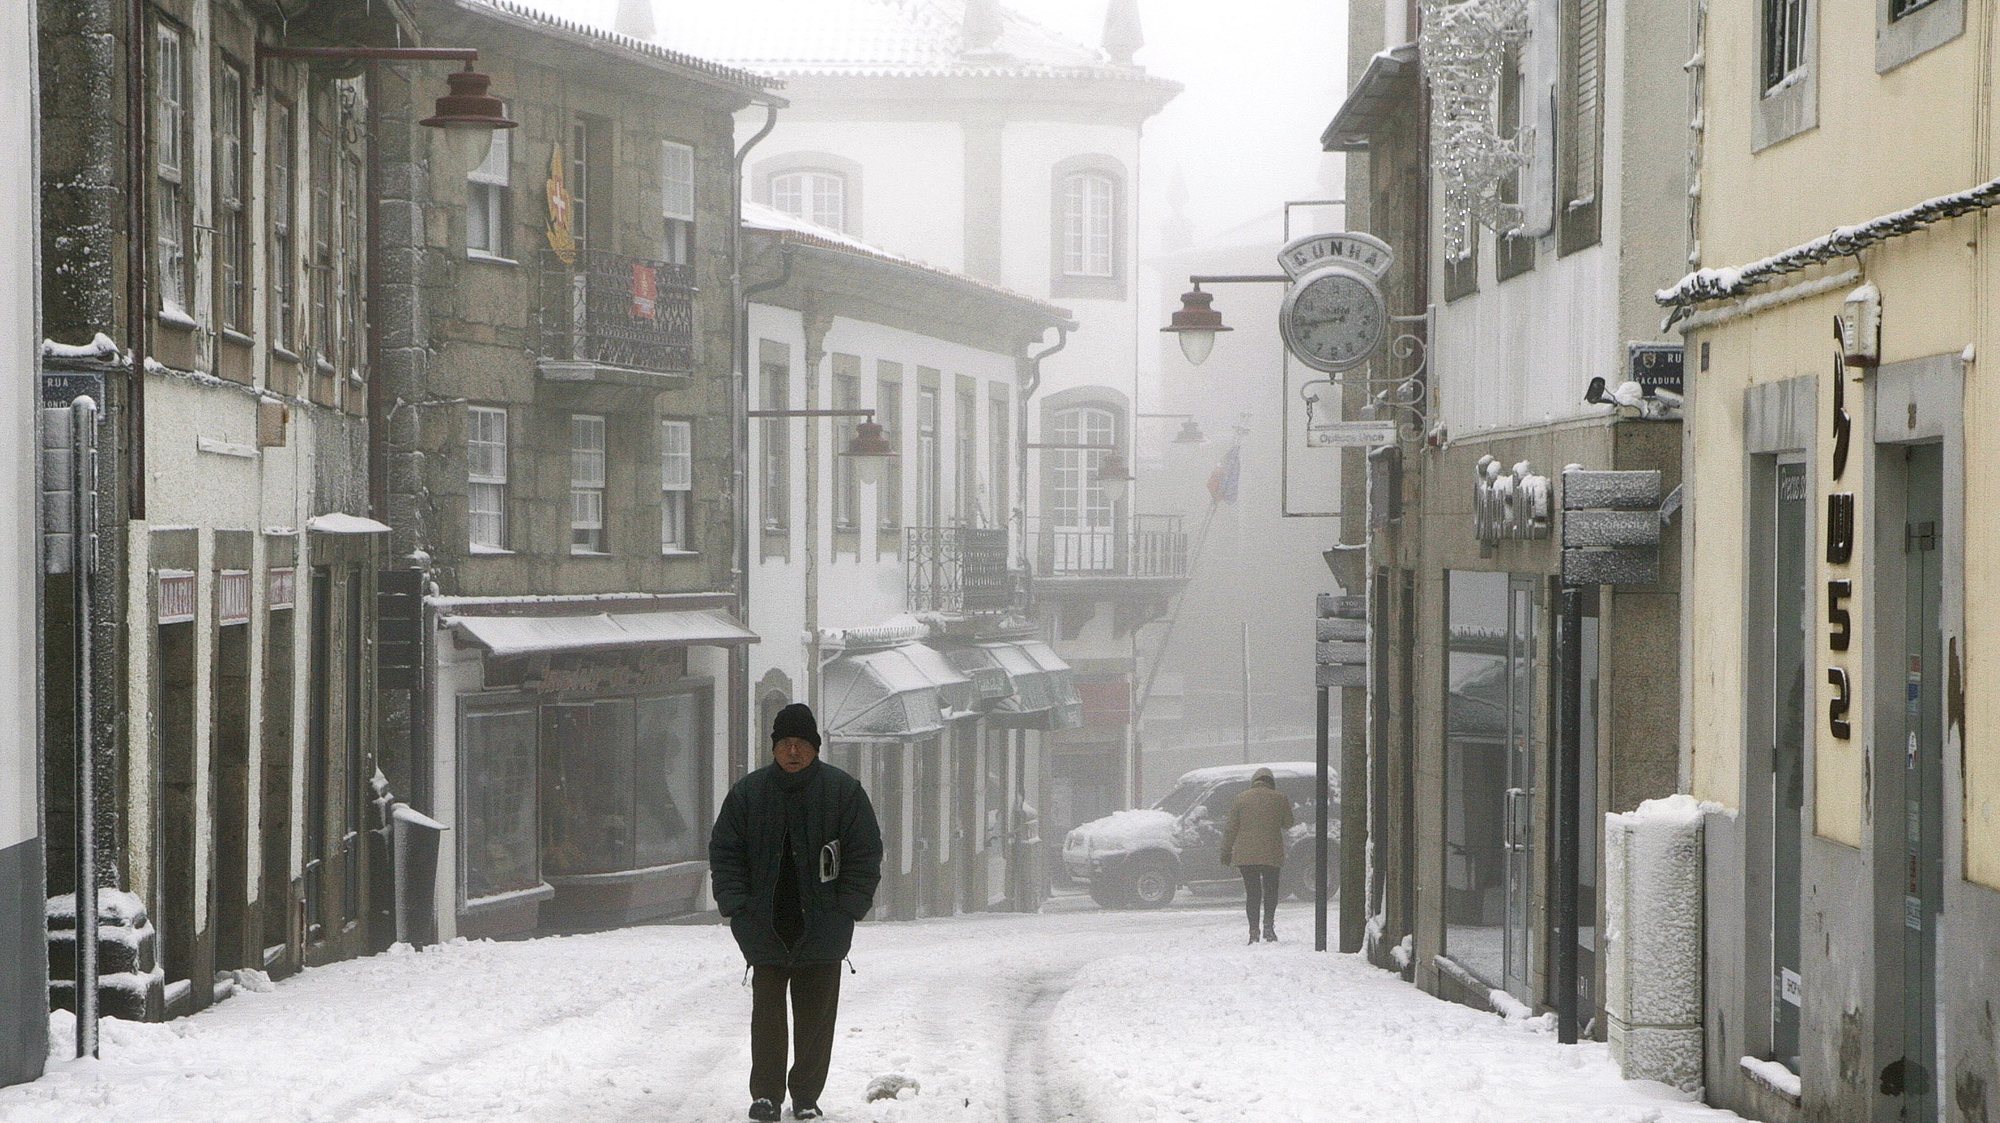 Muita neve, nevoeiro e frio nesta manhã de domingo, dia mundial da neve, na cidade da Guarda, após uma noite de intensa queda de neve.
Guarda, 18 de Janeiro de 2014.  MIGUEL PEREIRA DA SILVA / LUSA